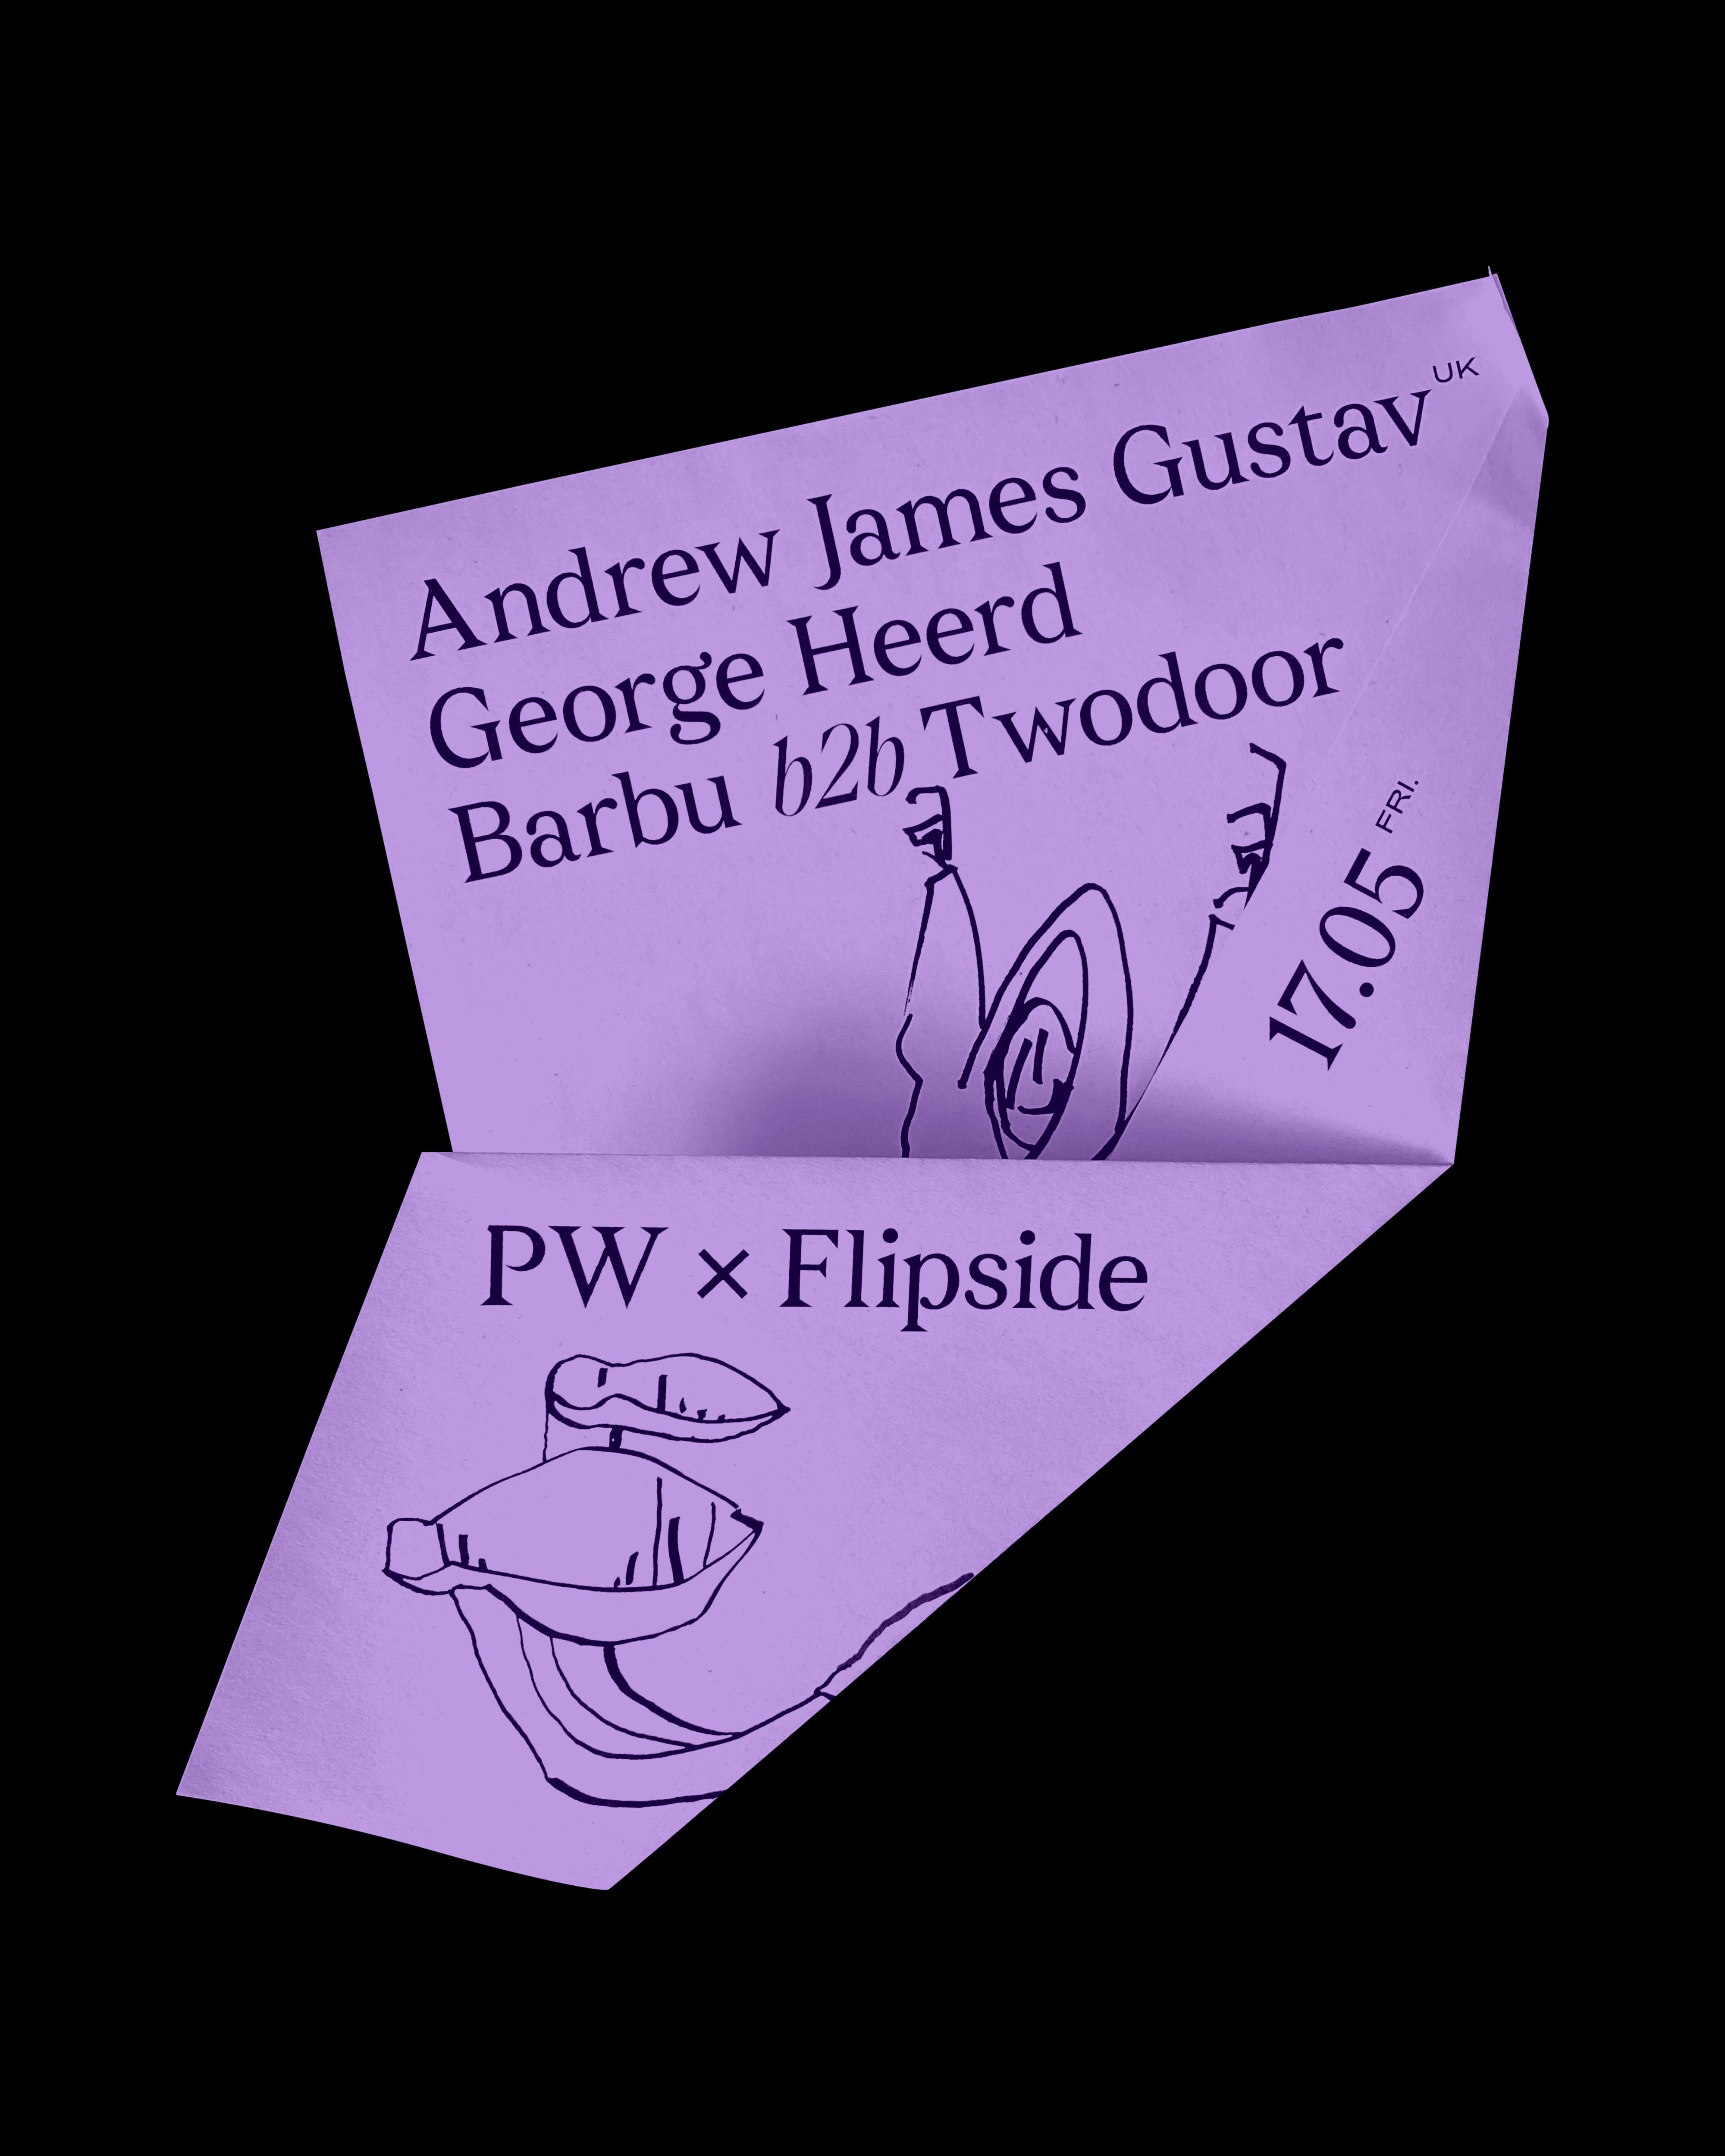 PW x Flipside • Andrew James Gustav, George Heerd, Barbu b2b Twodoor - フライヤー表